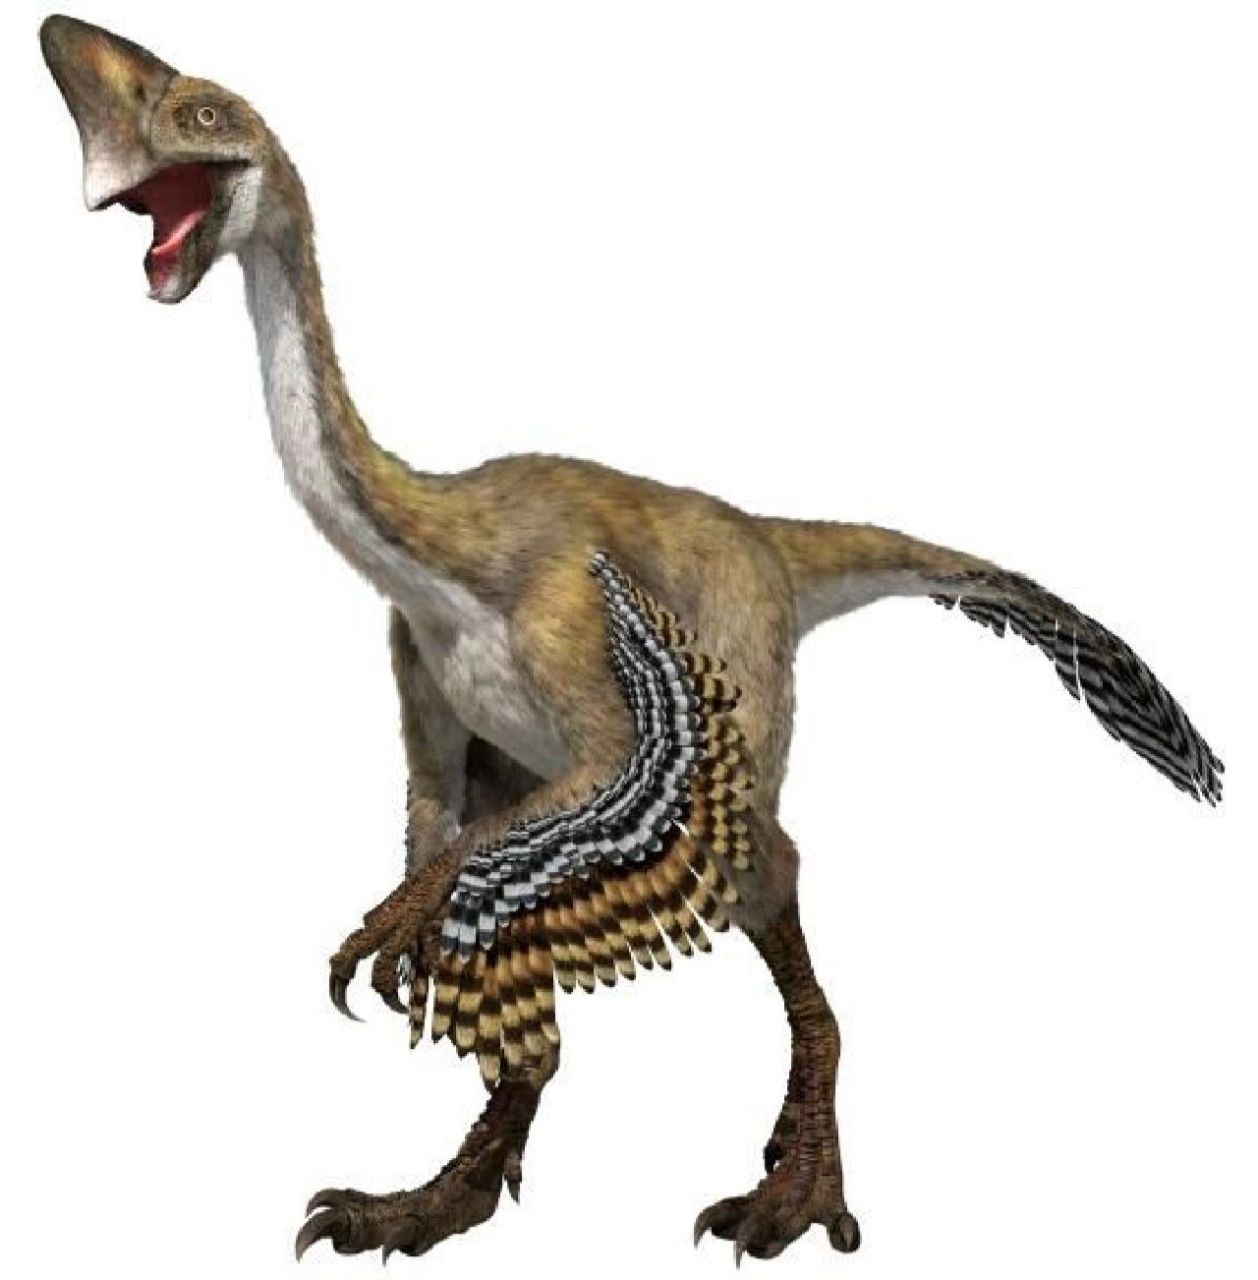 窃蛋龙——最冤屈的恐龙 9292 97恐龙档案: 生活时期:白垩纪